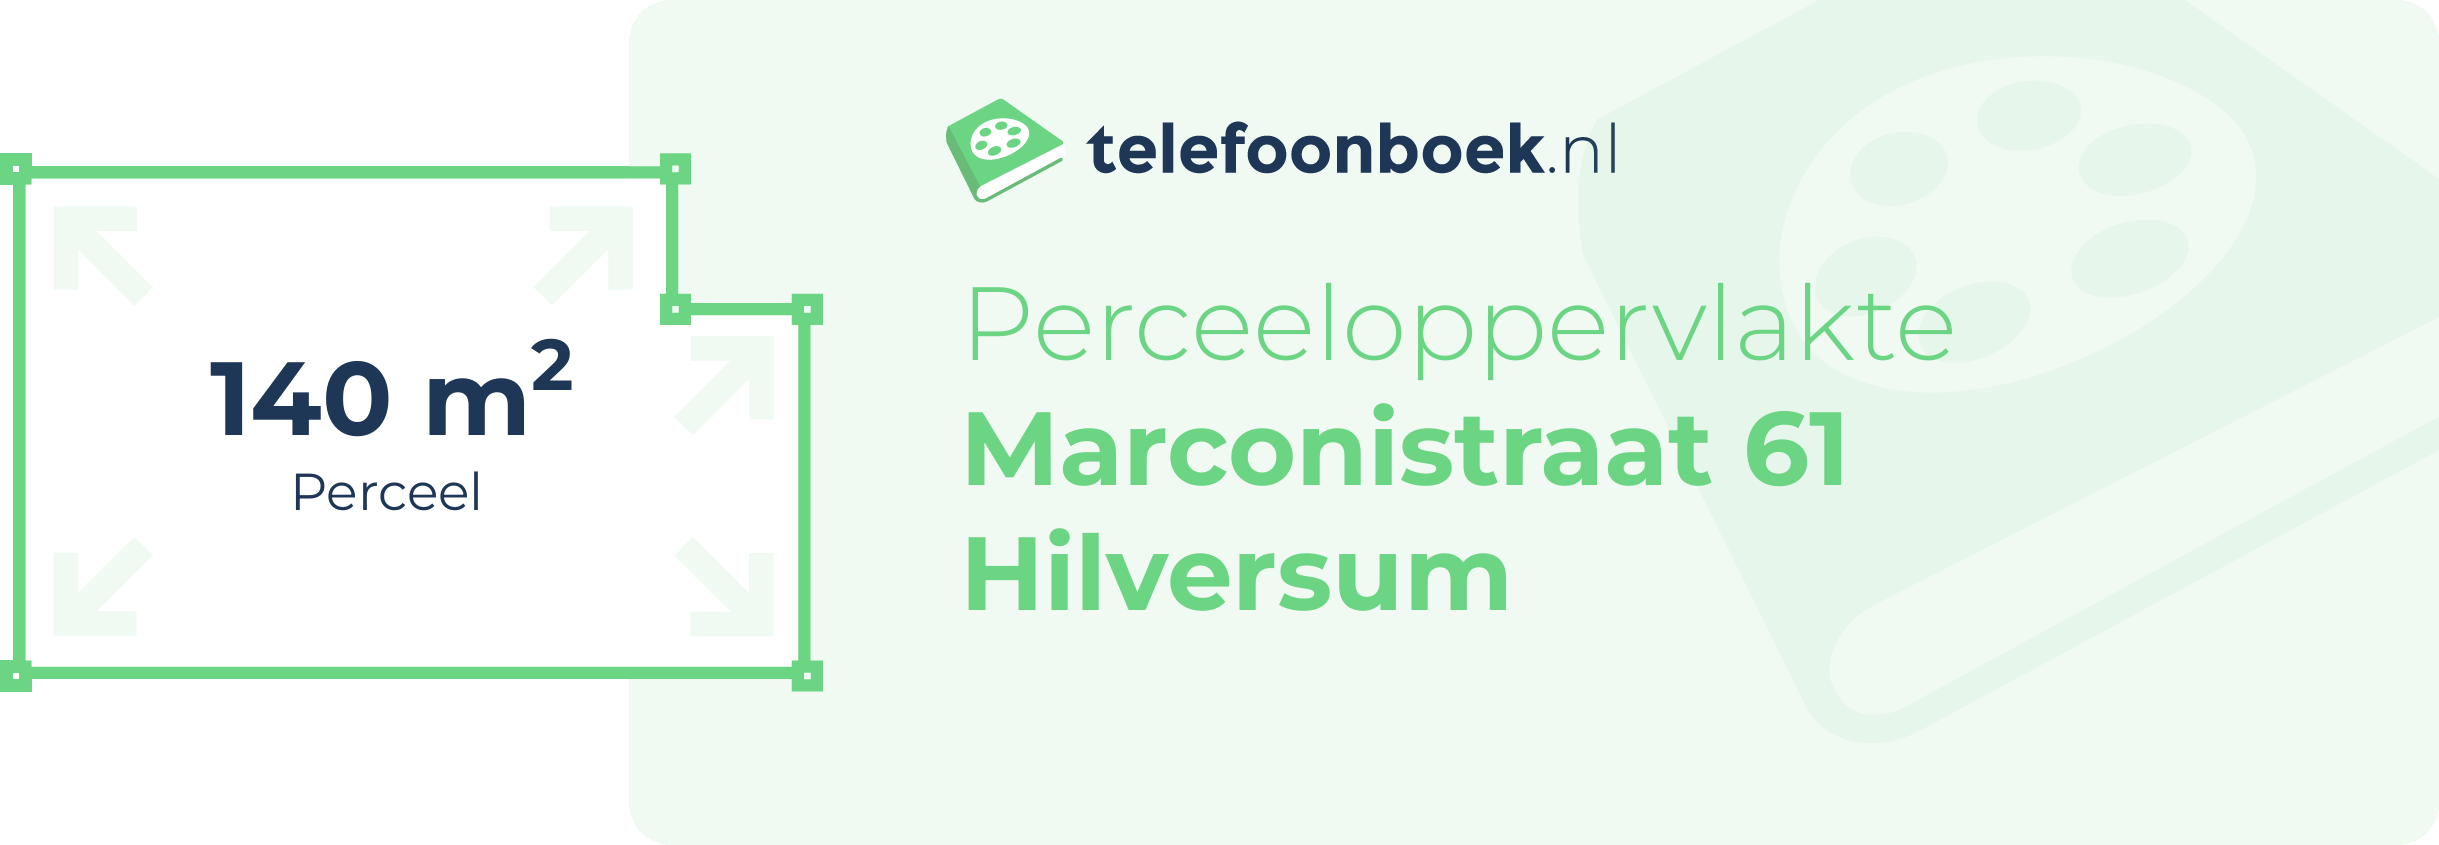 Perceeloppervlakte Marconistraat 61 Hilversum